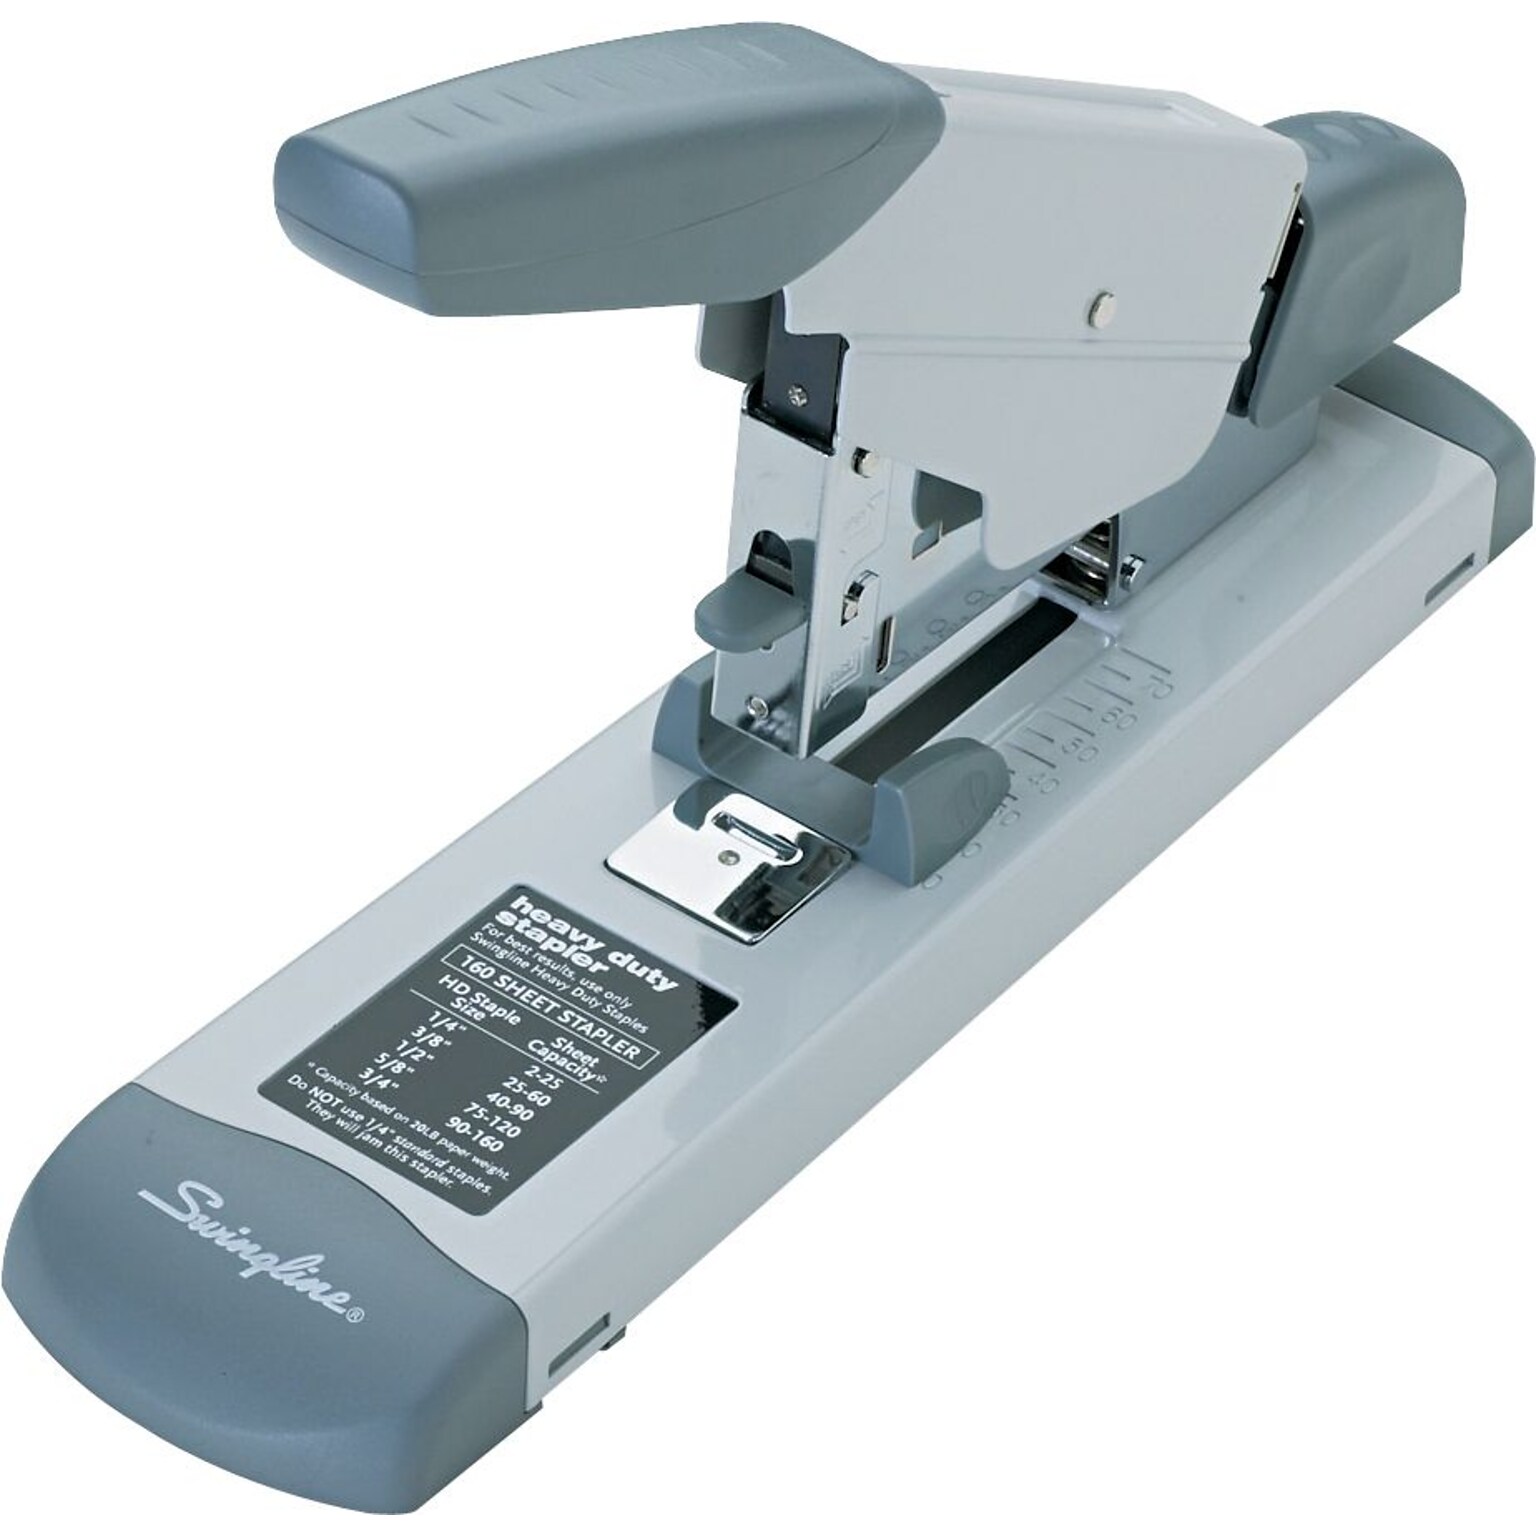 Swingline Heavy Duty Desktop Stapler, 160-Sheet Capacity, Gray/Silver (39002)